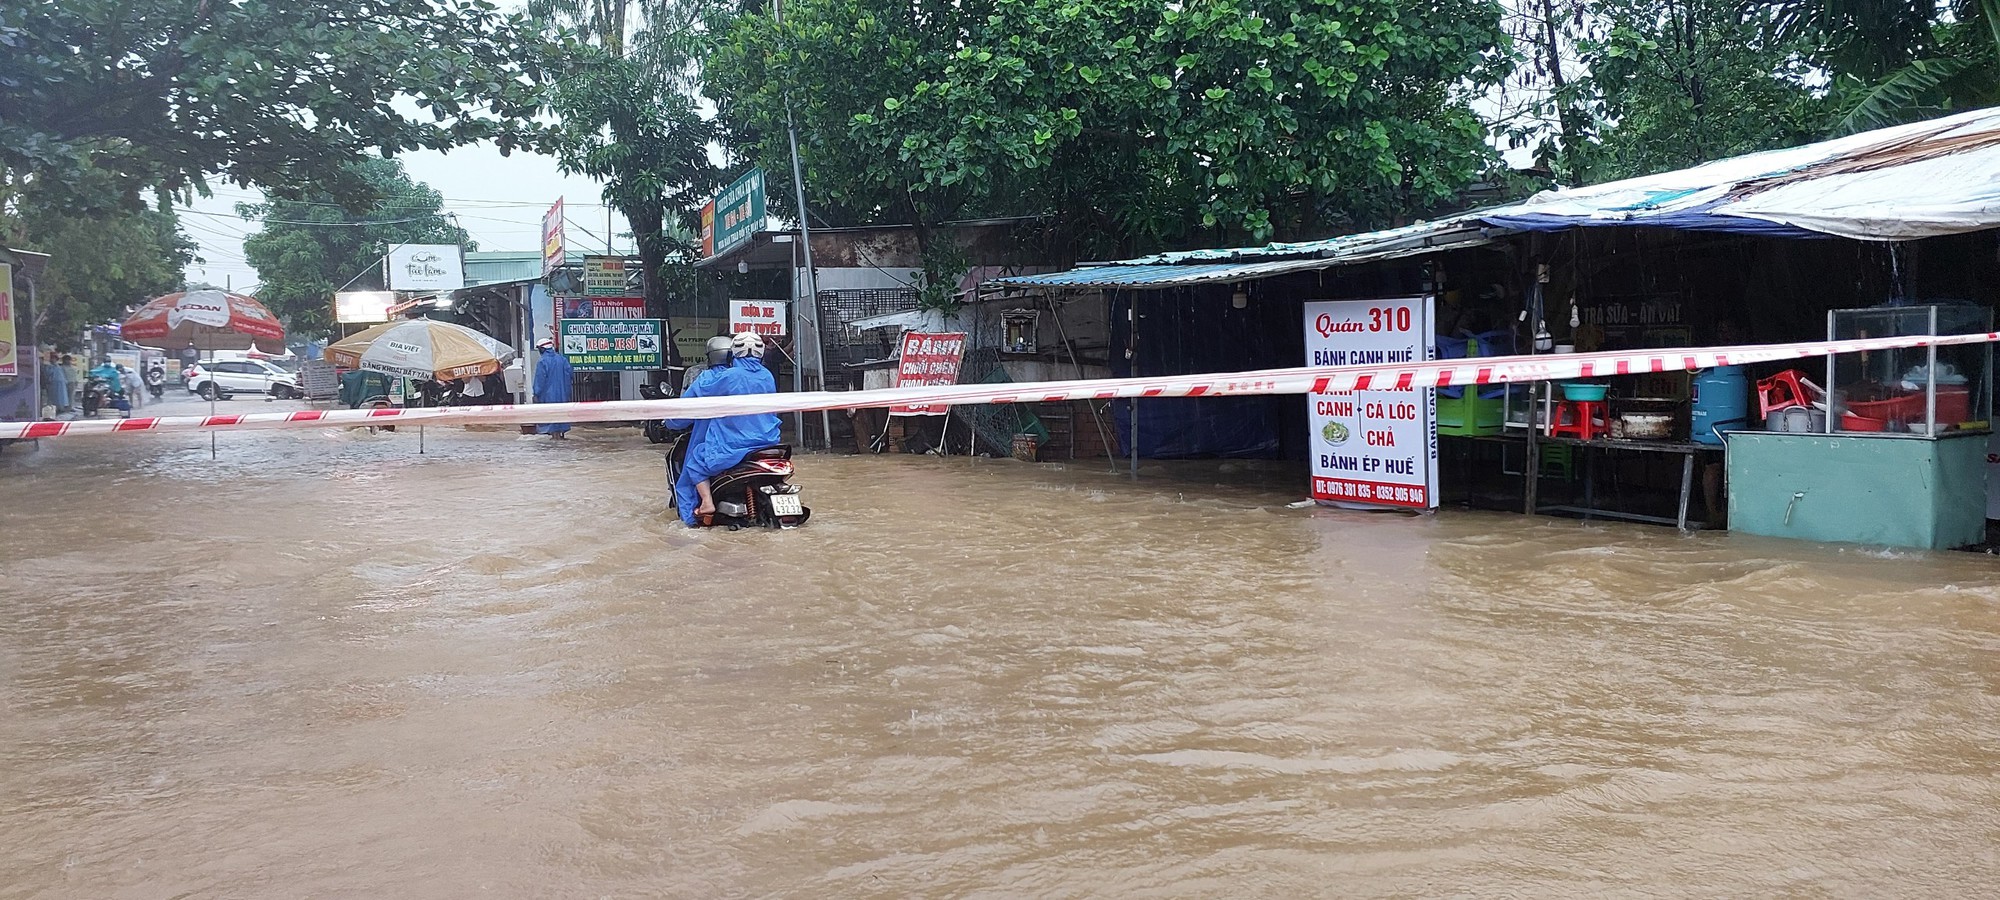 Đường phố Đà Nẵng lại ngập sau mưa lớn, ô tô, xe máy bì bõm lội nước - Ảnh 8.